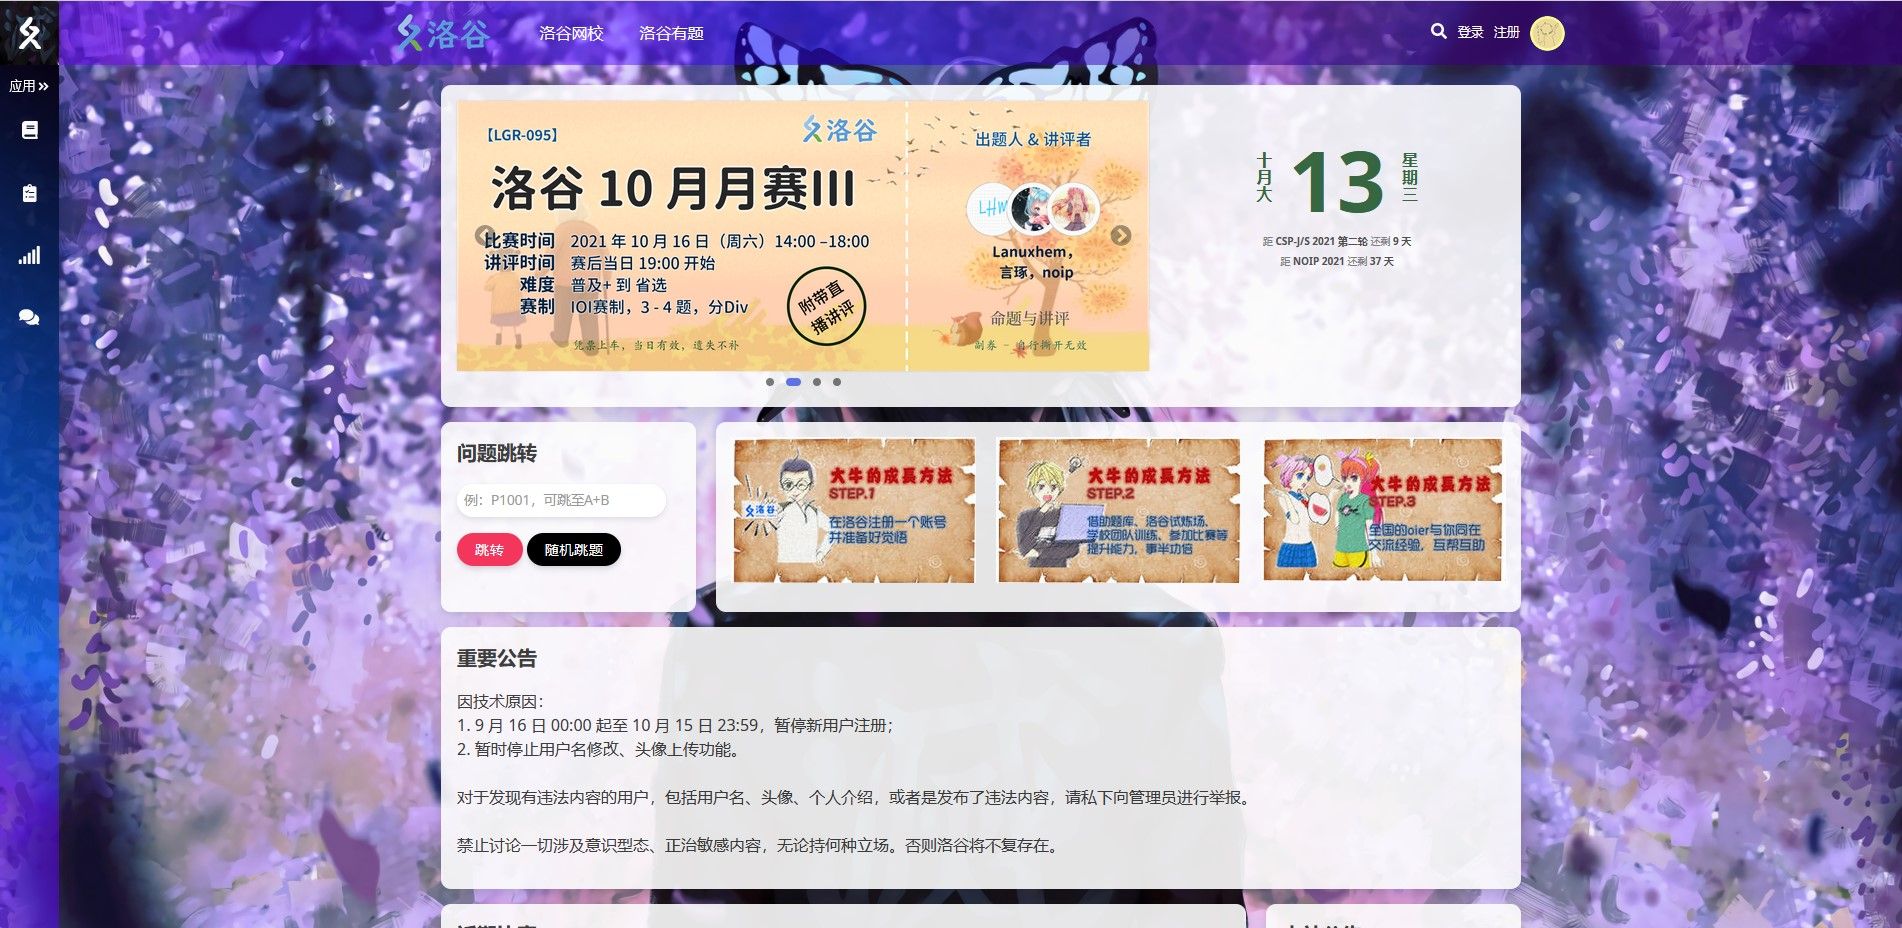 Screenshot of 钴洛谷plus1 - 洛谷 wmus Design - Luogu wmus Design